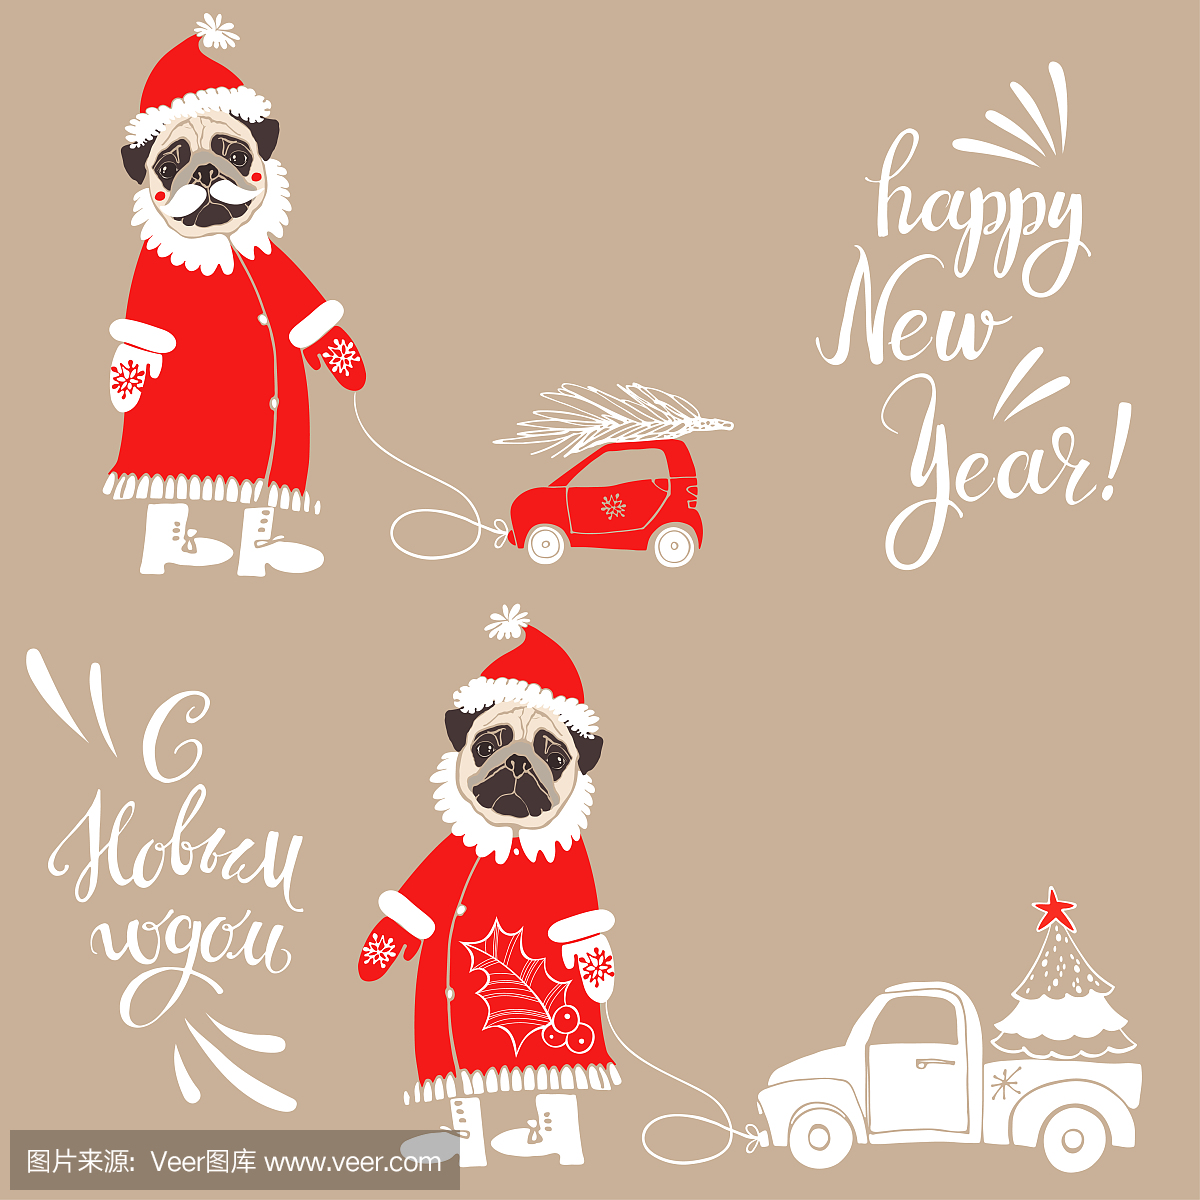 帕格在圣诞老人服装与汽车和圣诞树。用俄语和